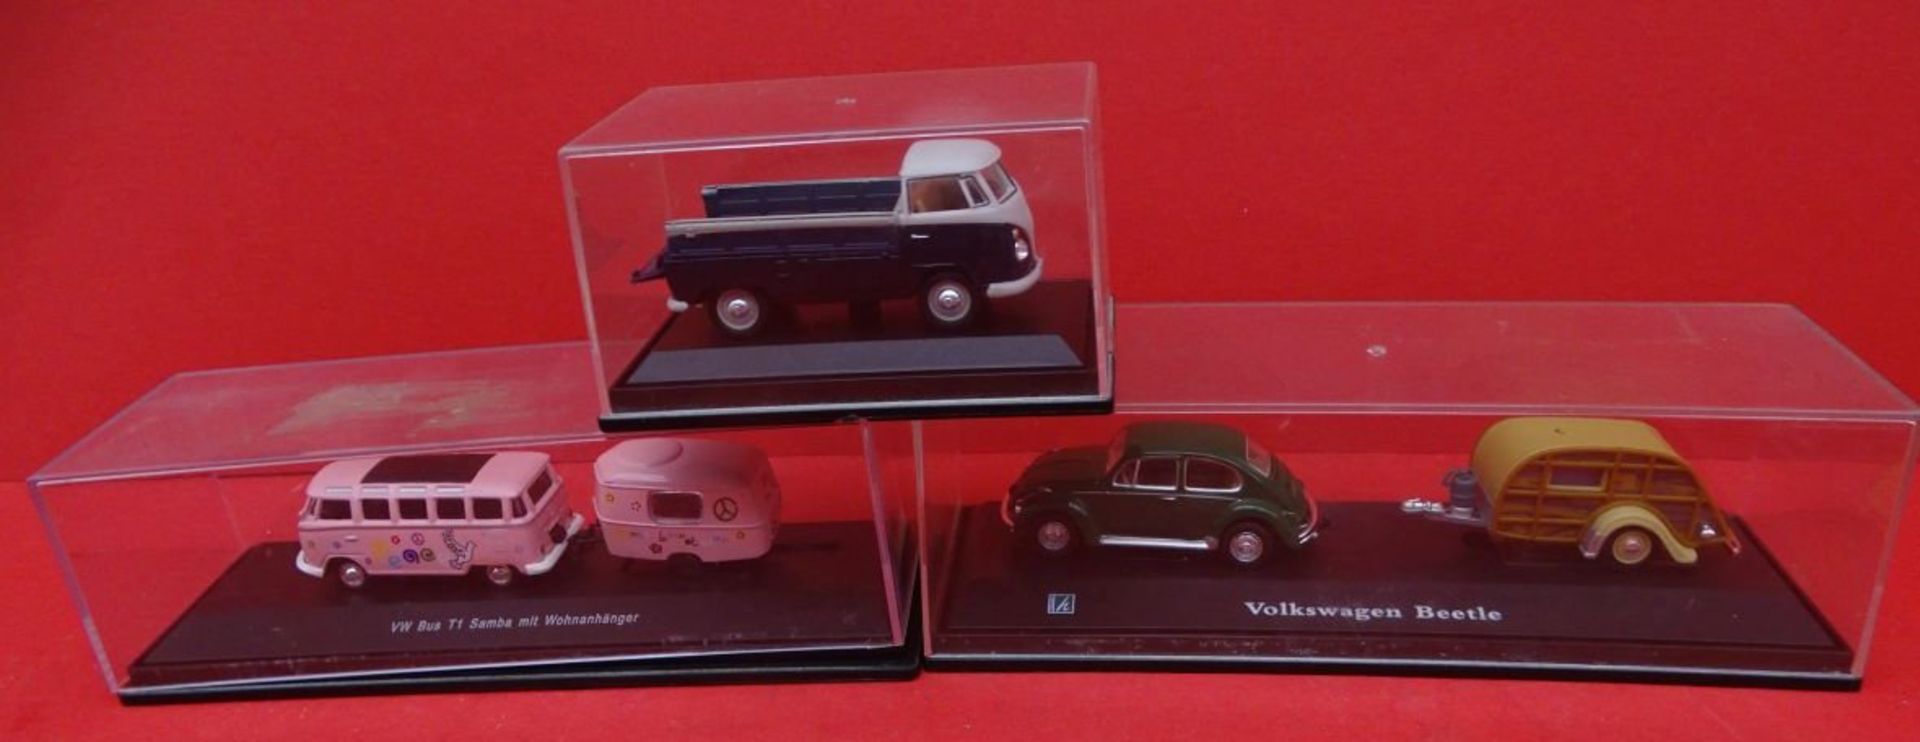 3x VW Modelle in Display,2x davon mit Wohnwagen "Hongwell" 1:43